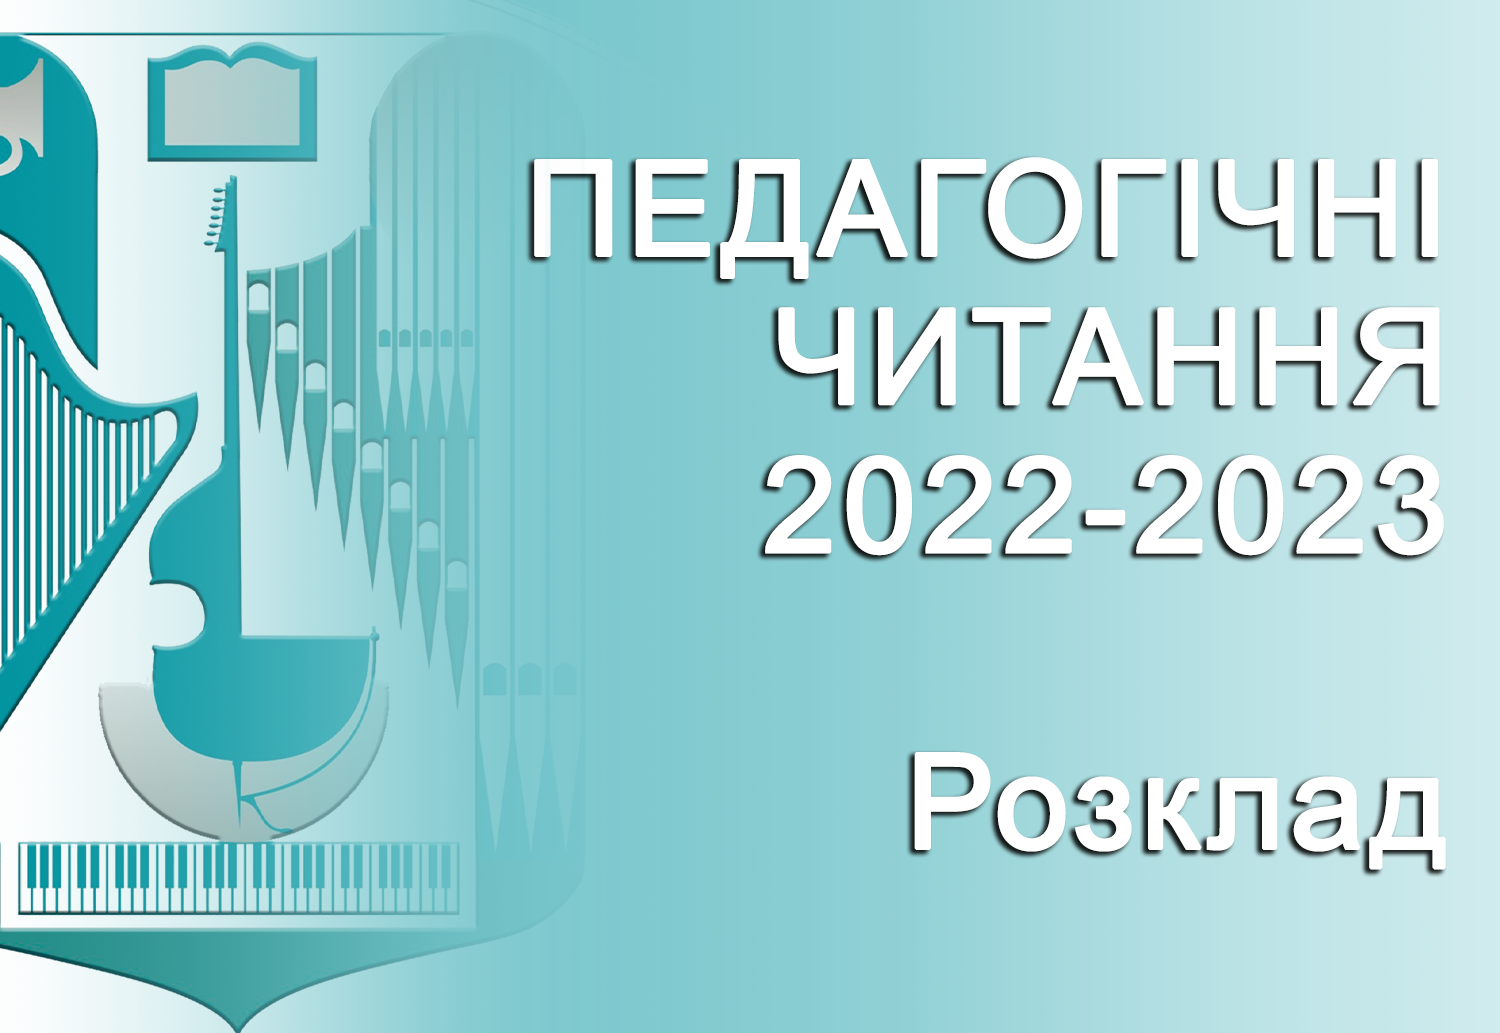 ПЕДАГОГІЧНІ ЧИТАННЯ 2022-2023 (Розклад проведення)